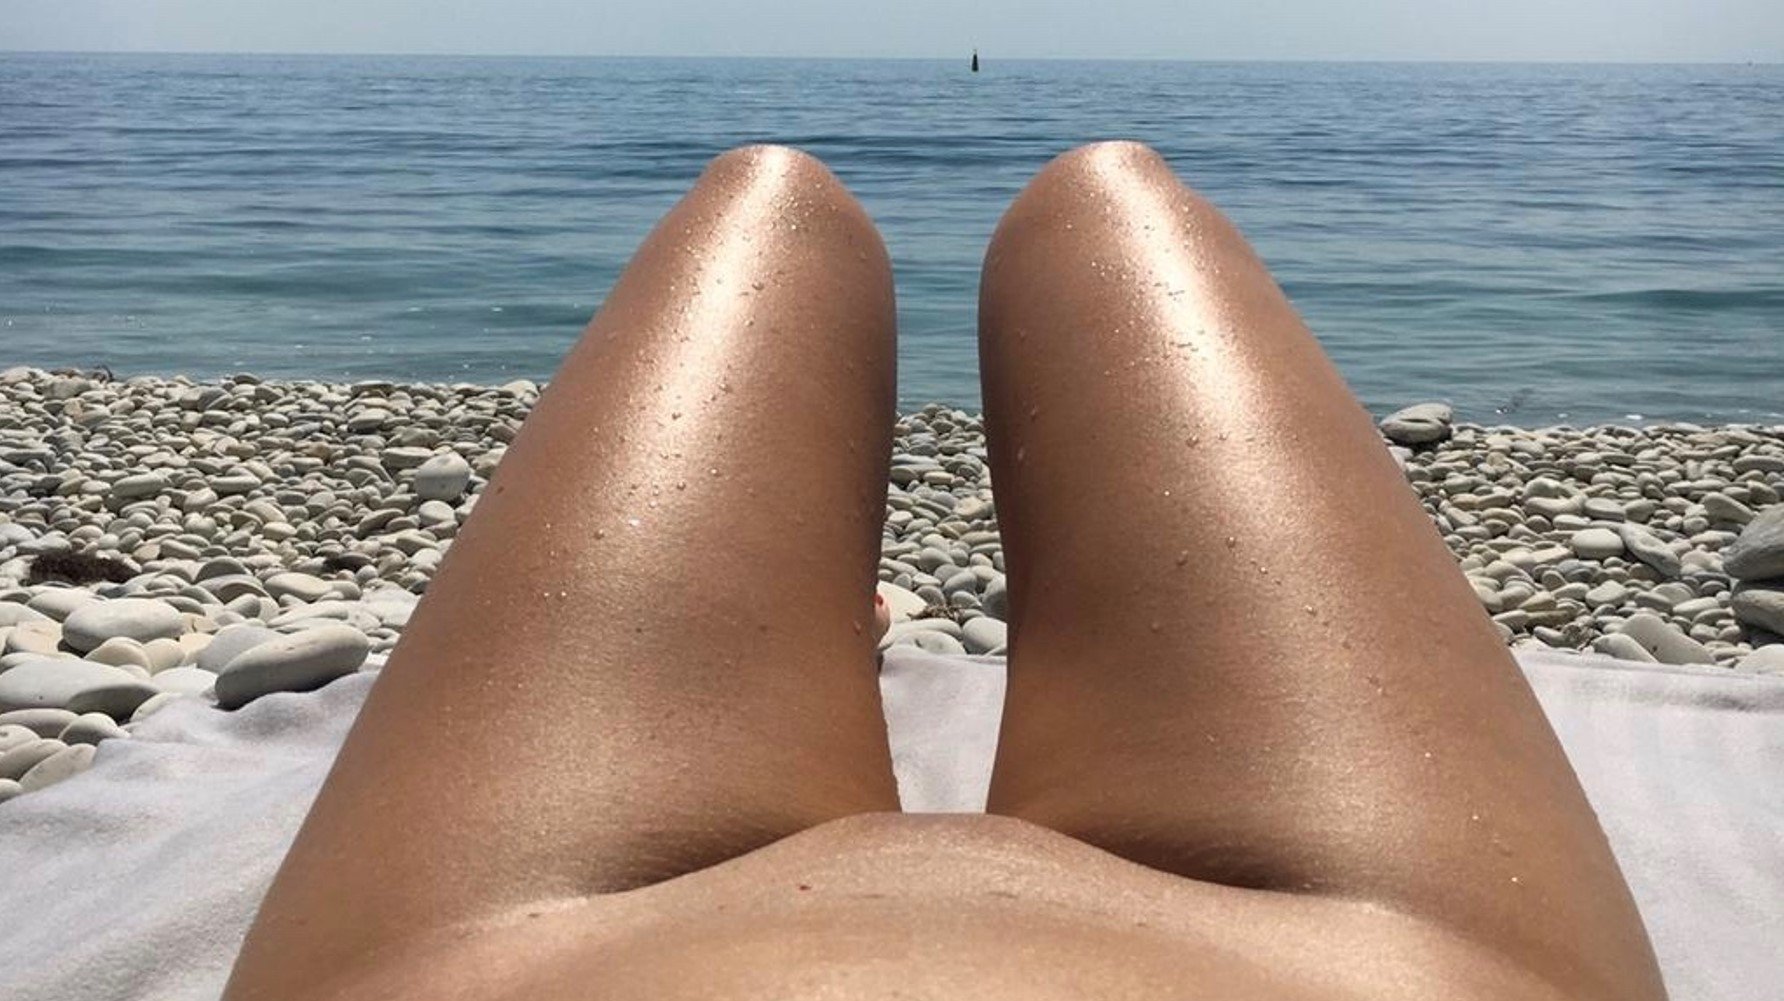 playa nudista adolescente voyeur Fotos para adultos Hq